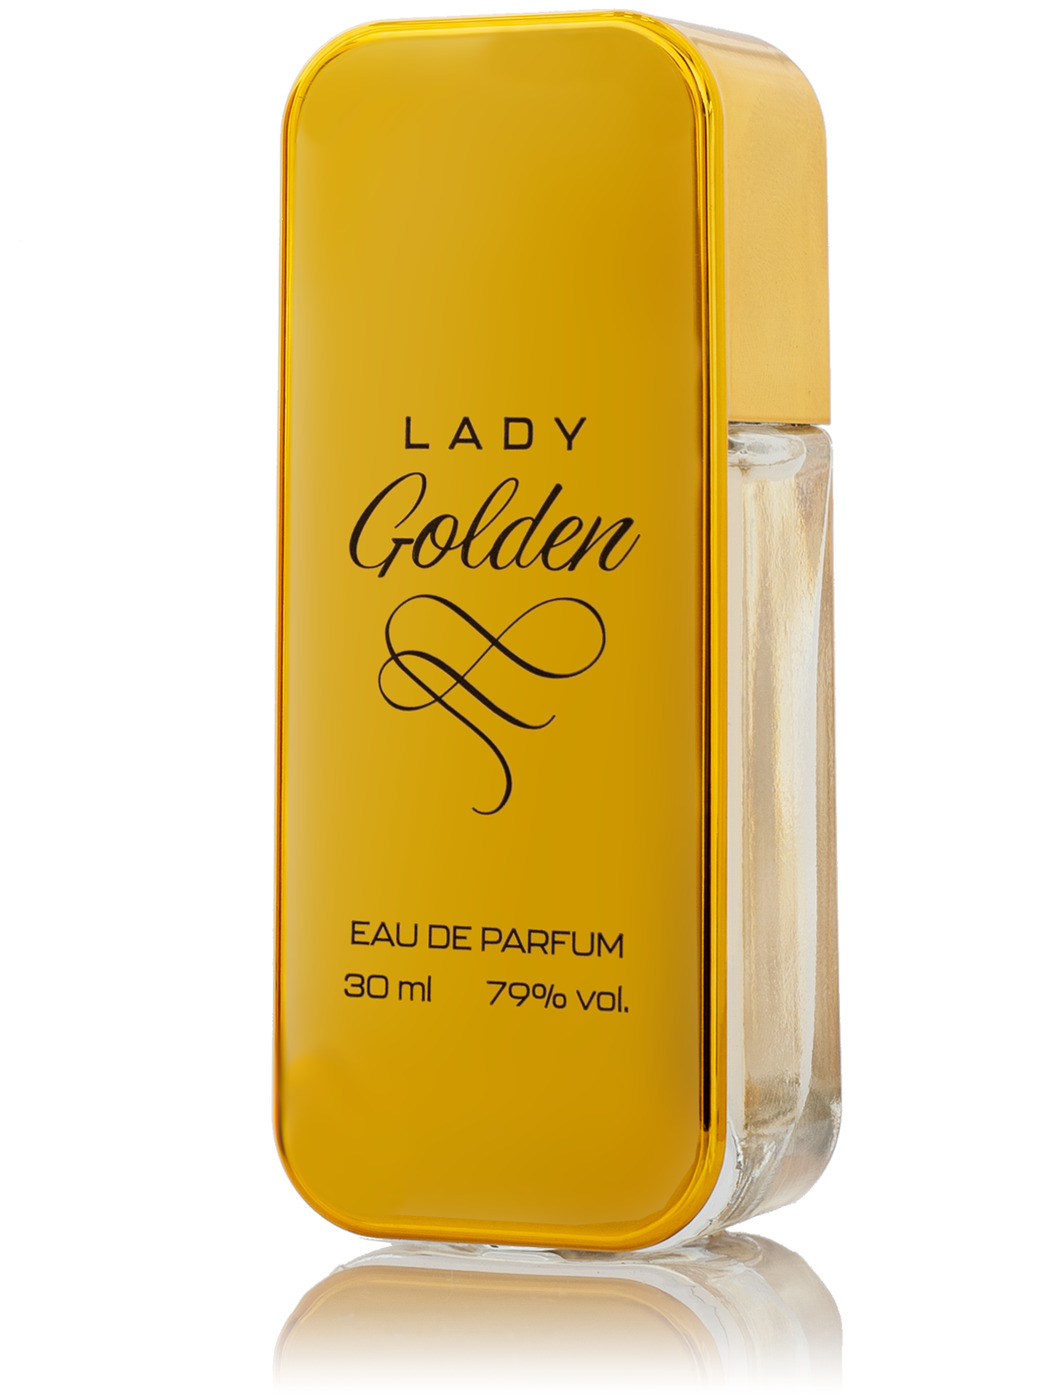 Духи леди отзывы. Туалетная вода Голден леди. Lady Golden, 30 мл. Golden Lady духи женские. Туалетная вода аромат "Golden Lady".